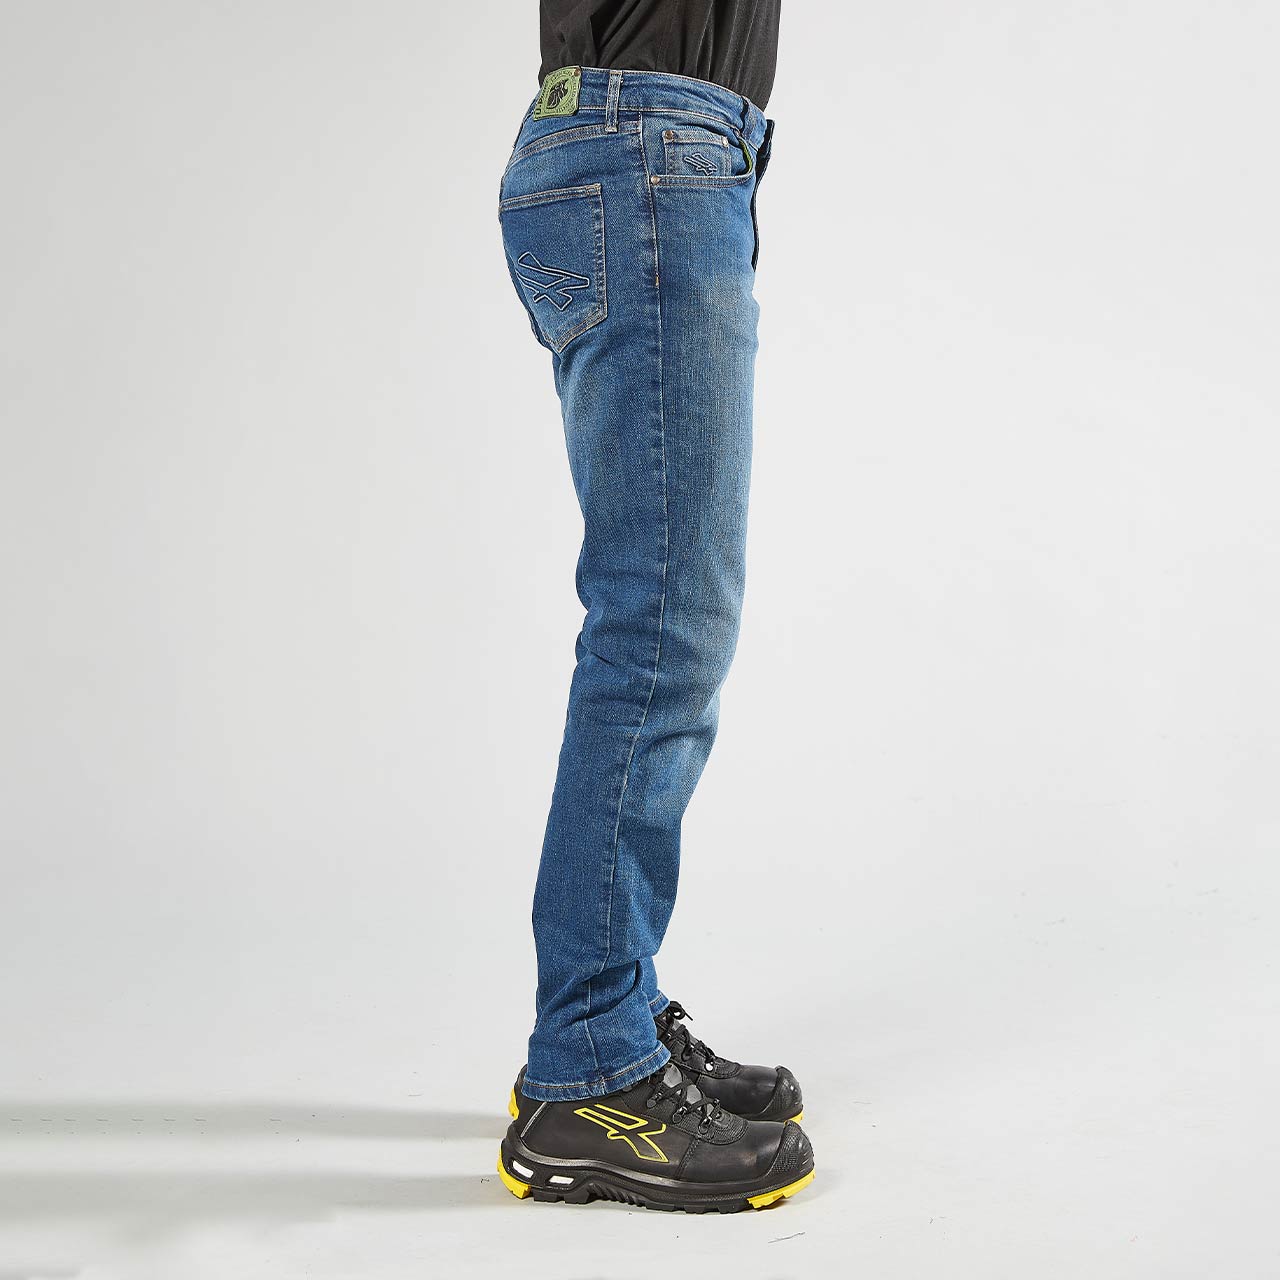 pantalone da lavoro upower modello romeo colore guado jeans indossato lato destro